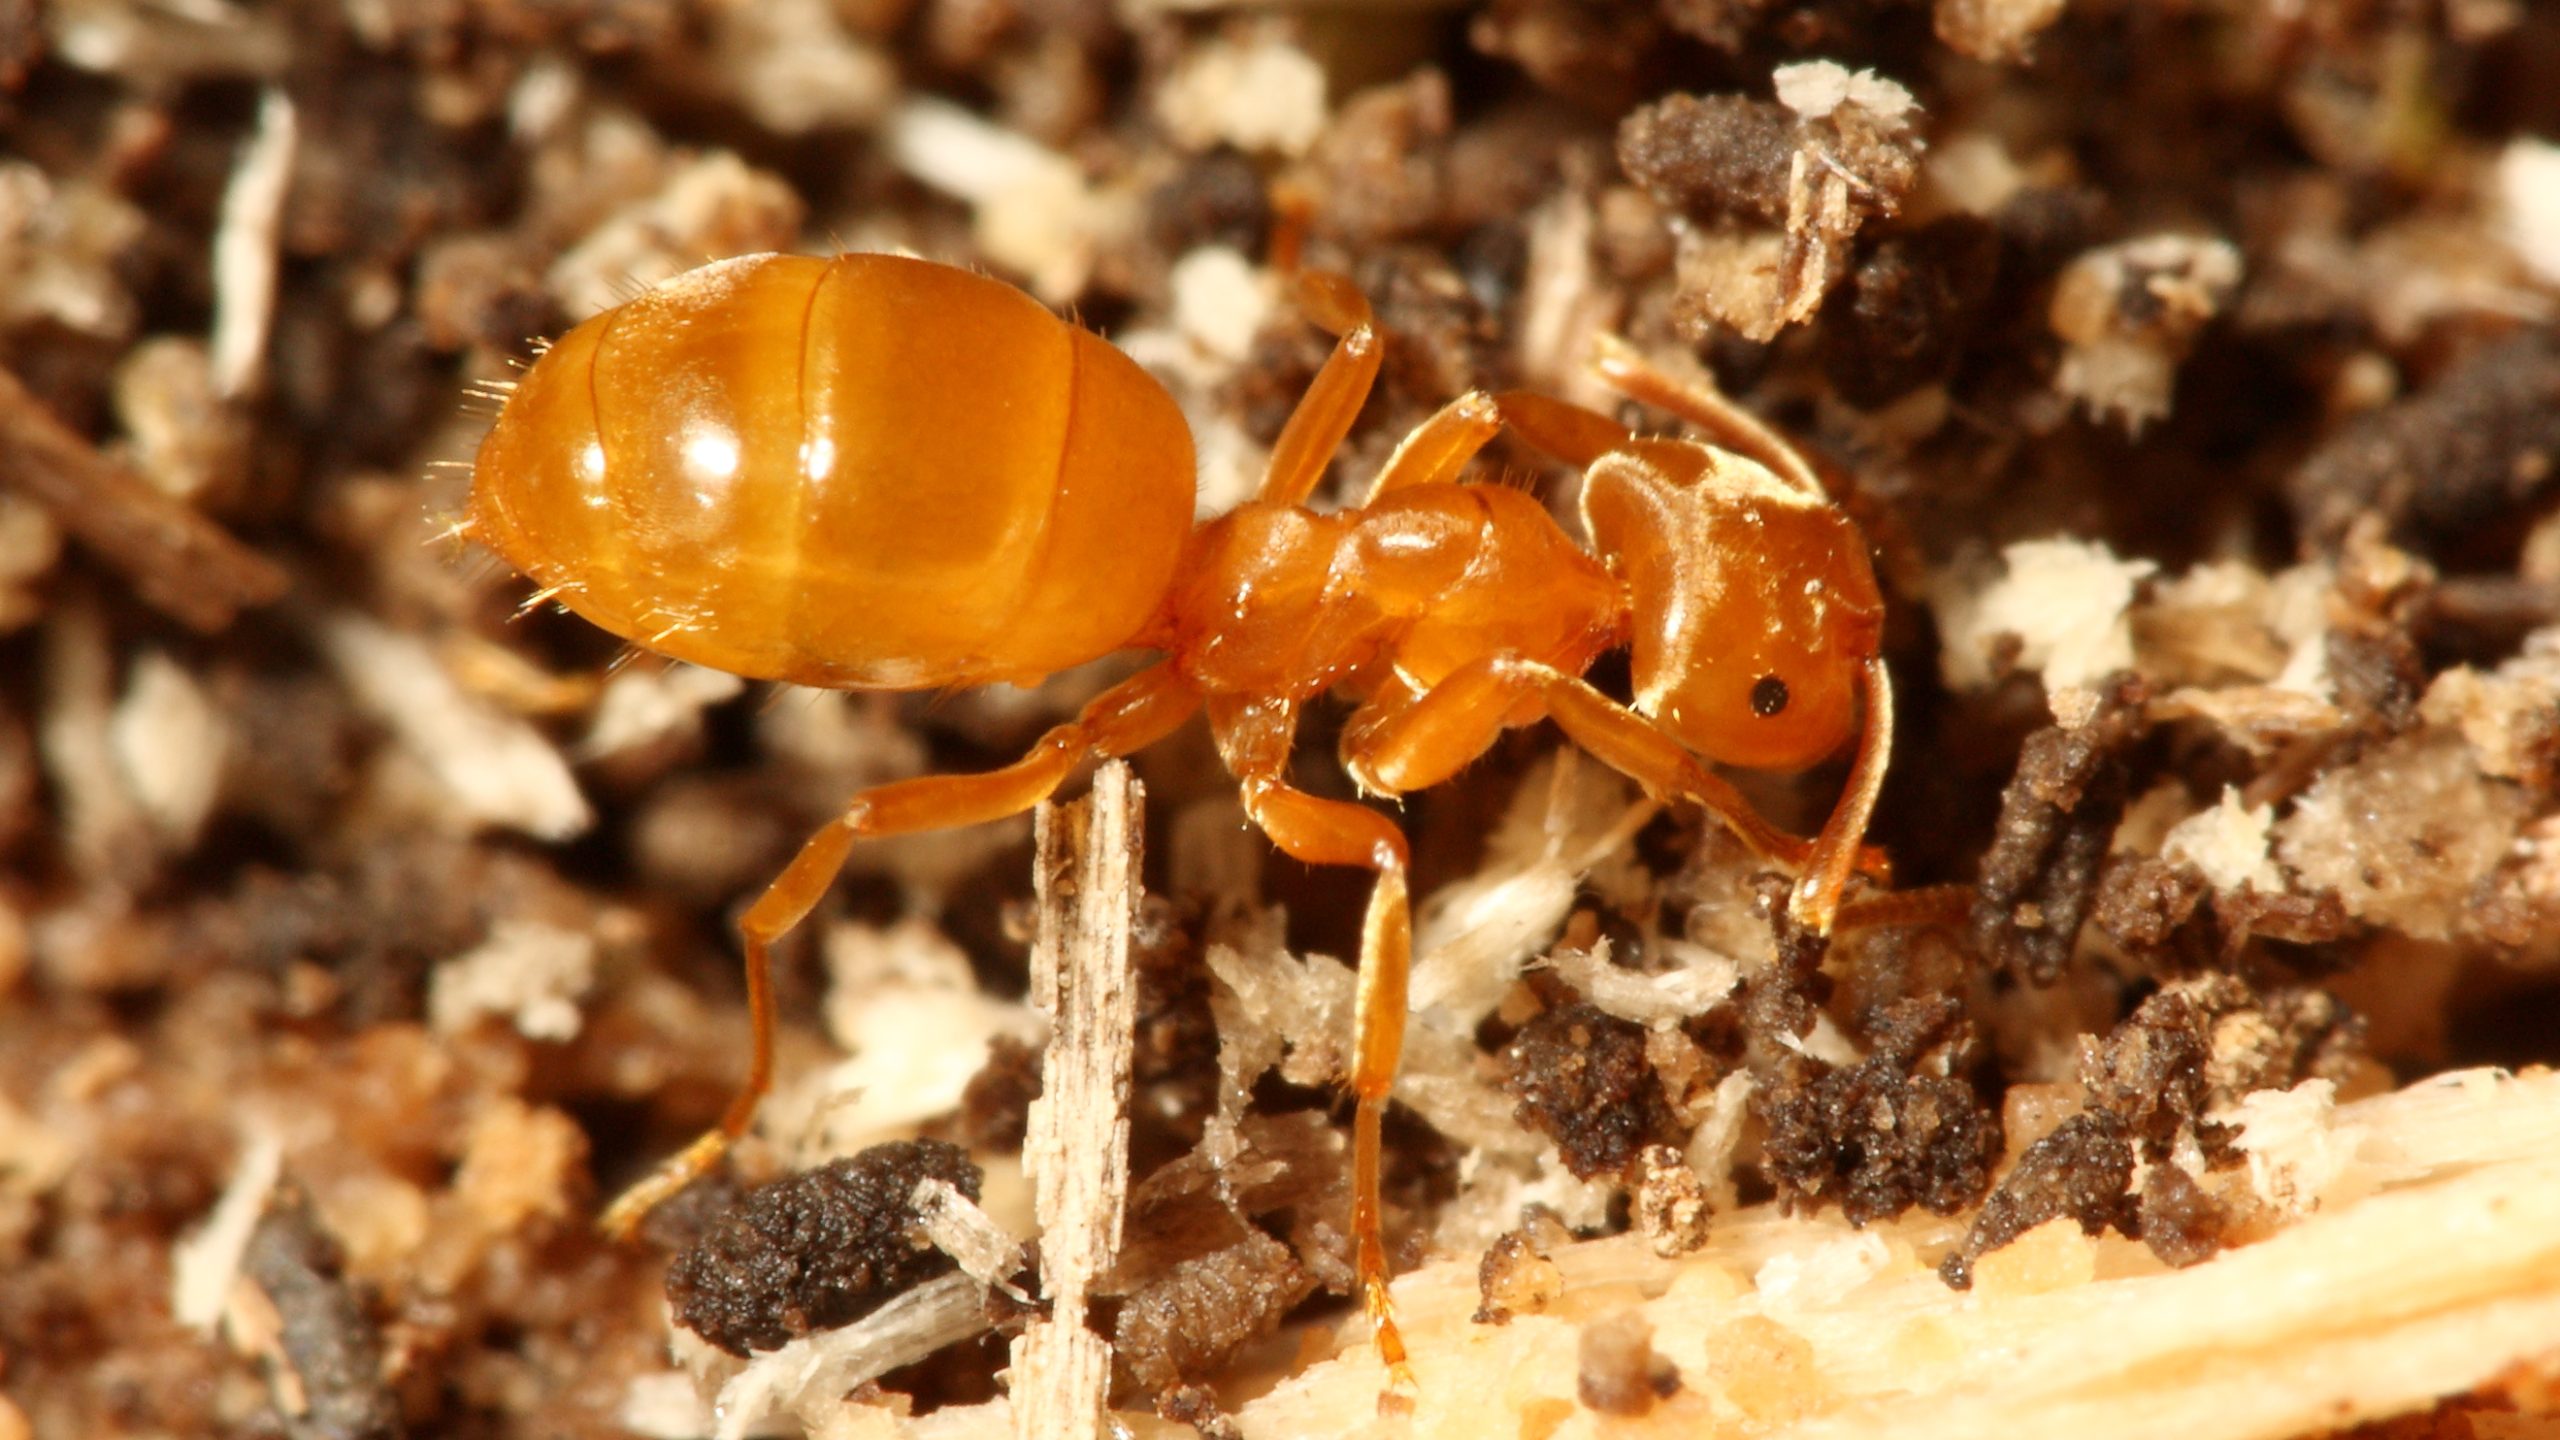 lasius ant worker